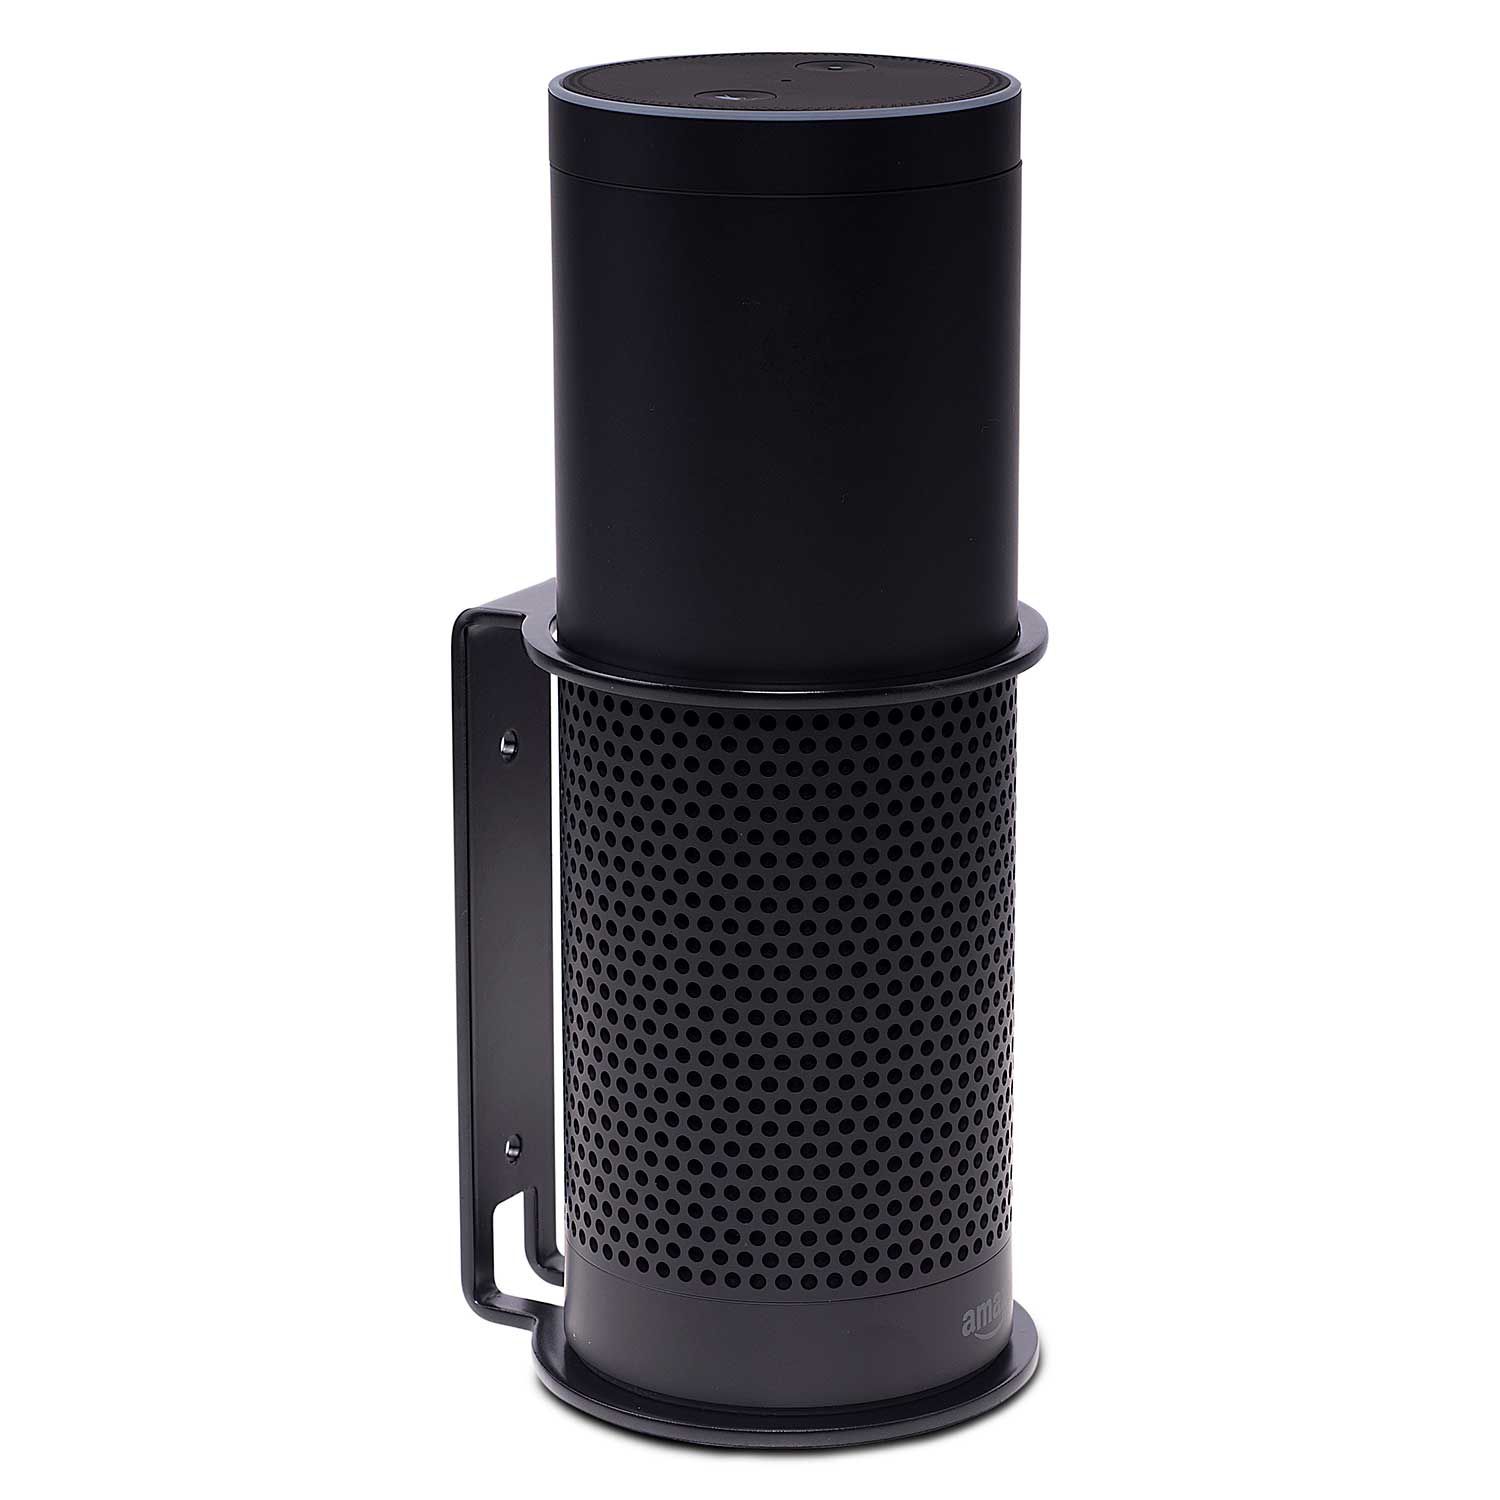 Soporte de pared y techo compatible con Alexa Echo Pop, color negro